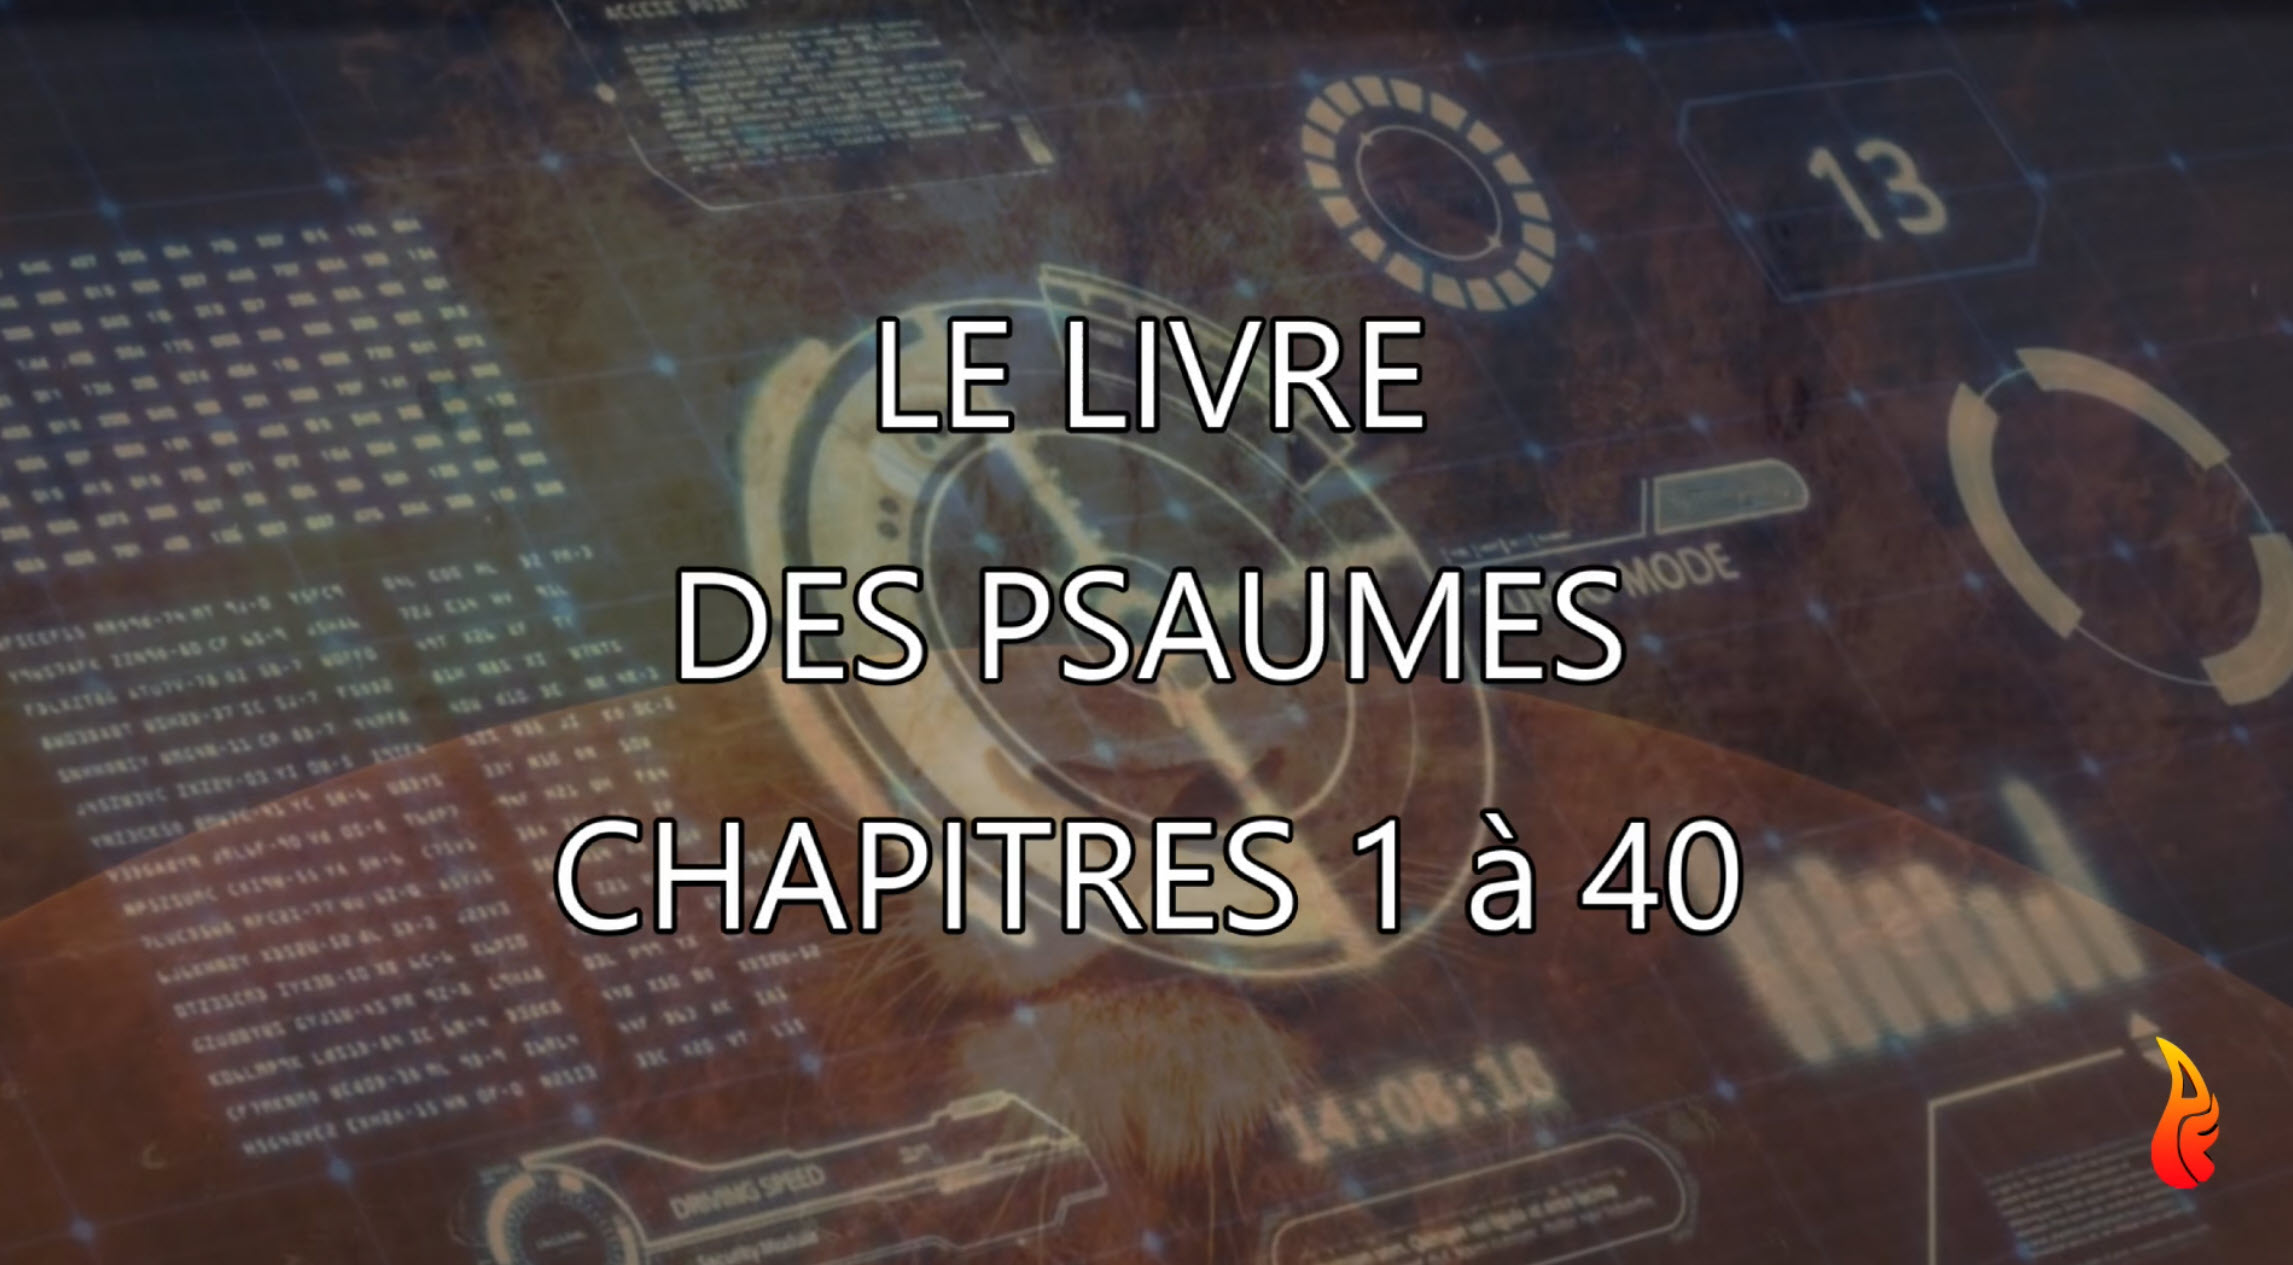 Le Livre des Psaumes – Chapitres 1 à 40 – Vidéo 4K